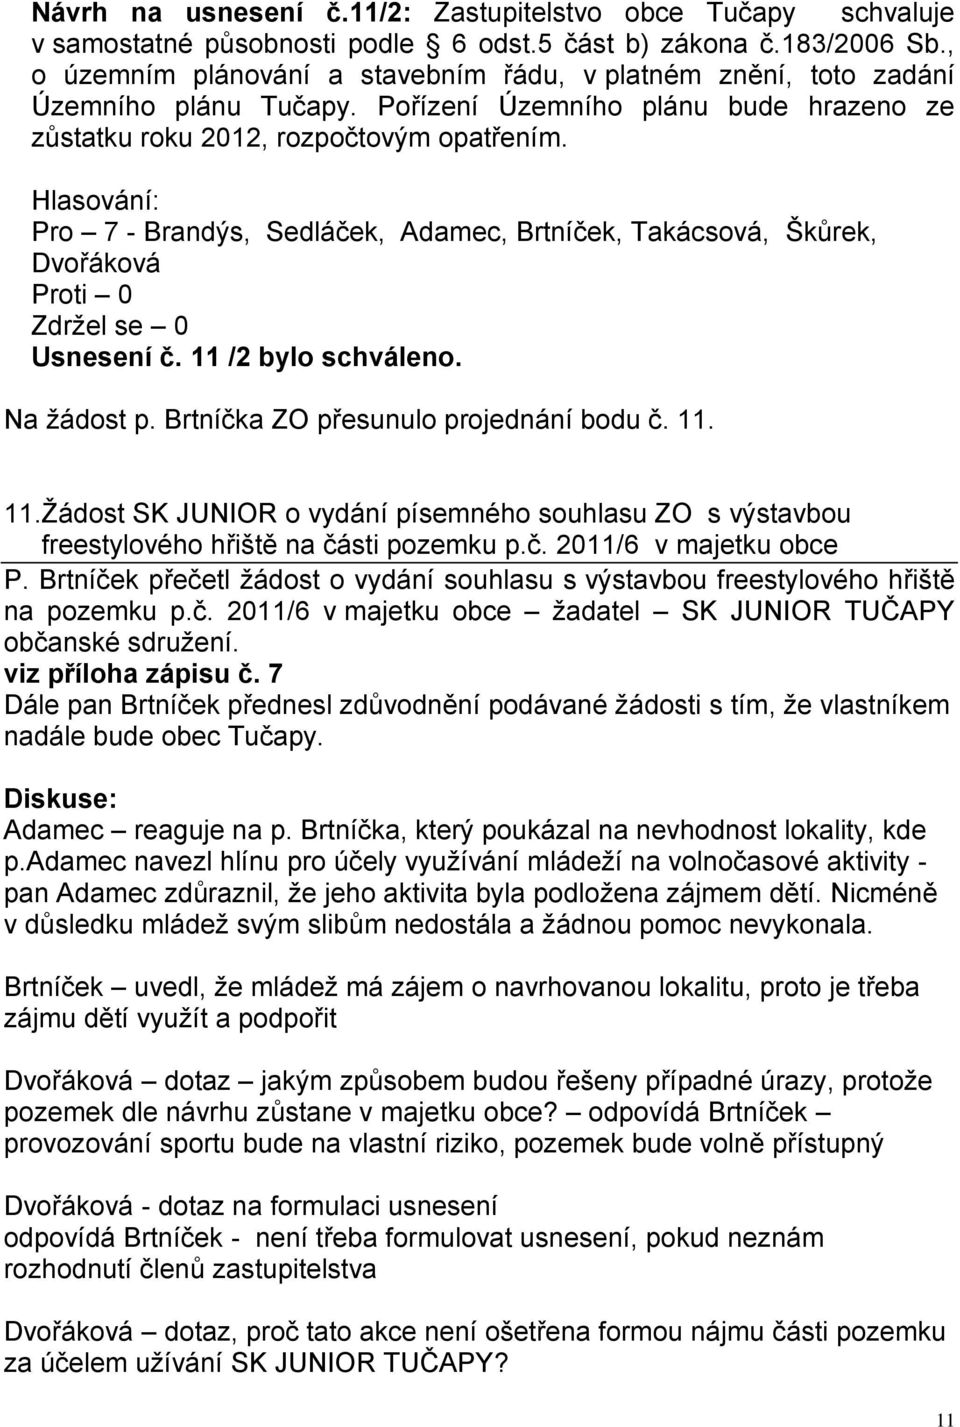 Pro 7 - Brandýs, Sedláček, Adamec, Brtníček, Takácsová, Škůrek, Zdržel se 0 Usnesení č. 11 /2 bylo schváleno. Na žádost p. Brtníčka ZO přesunulo projednání bodu č. 11. 11.Žádost SK JUNIOR o vydání písemného souhlasu ZO s výstavbou freestylového hřiště na části pozemku p.